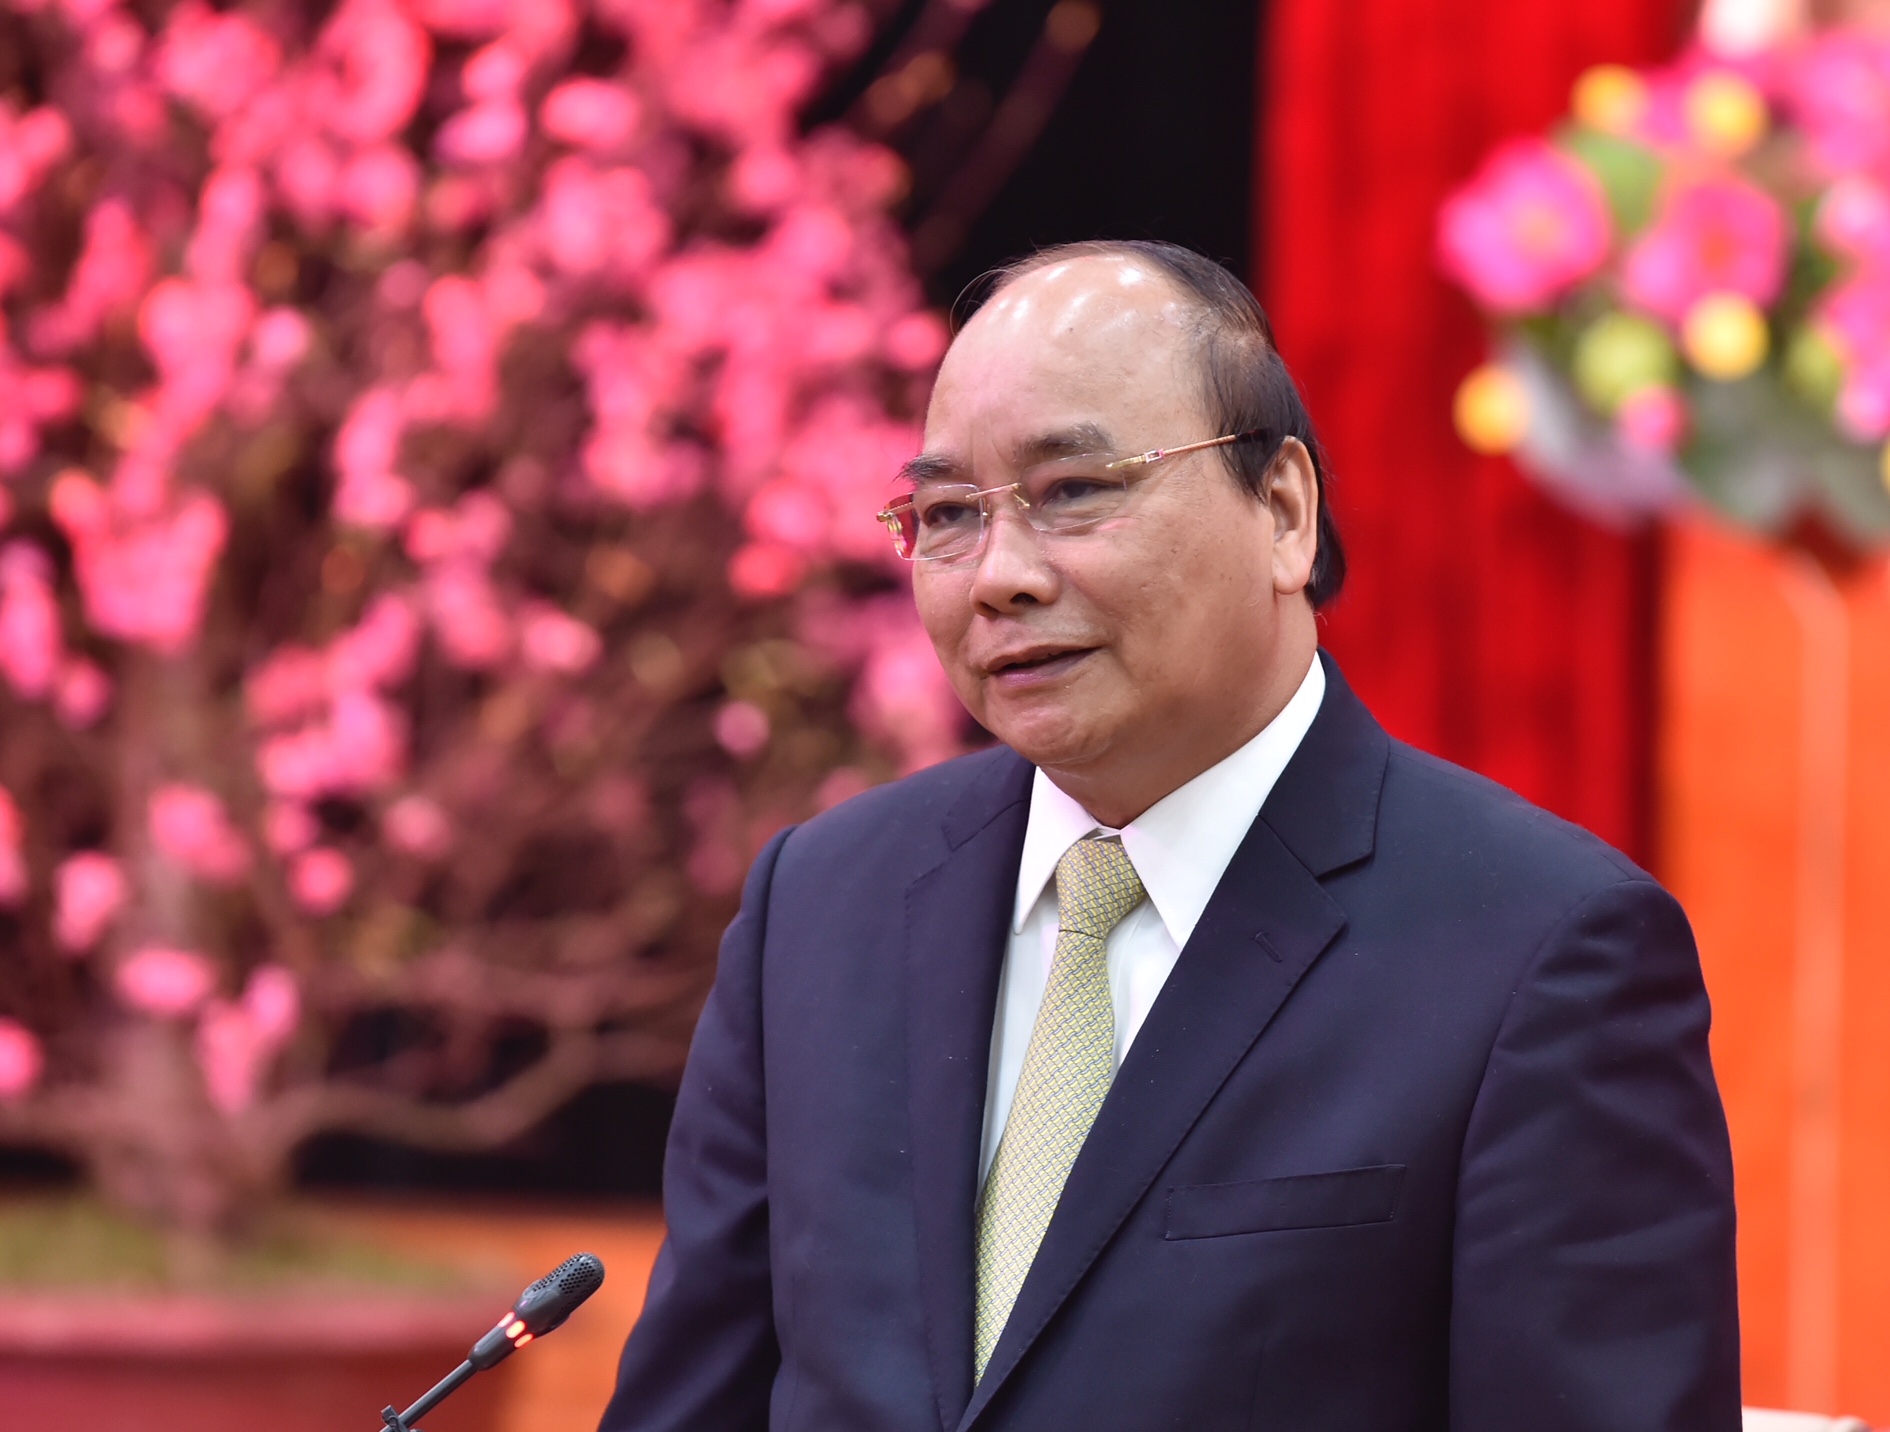 Thủ tướng Nguyễn Xuân Phúc: Không có người dân ủng hộ thì khó thành công